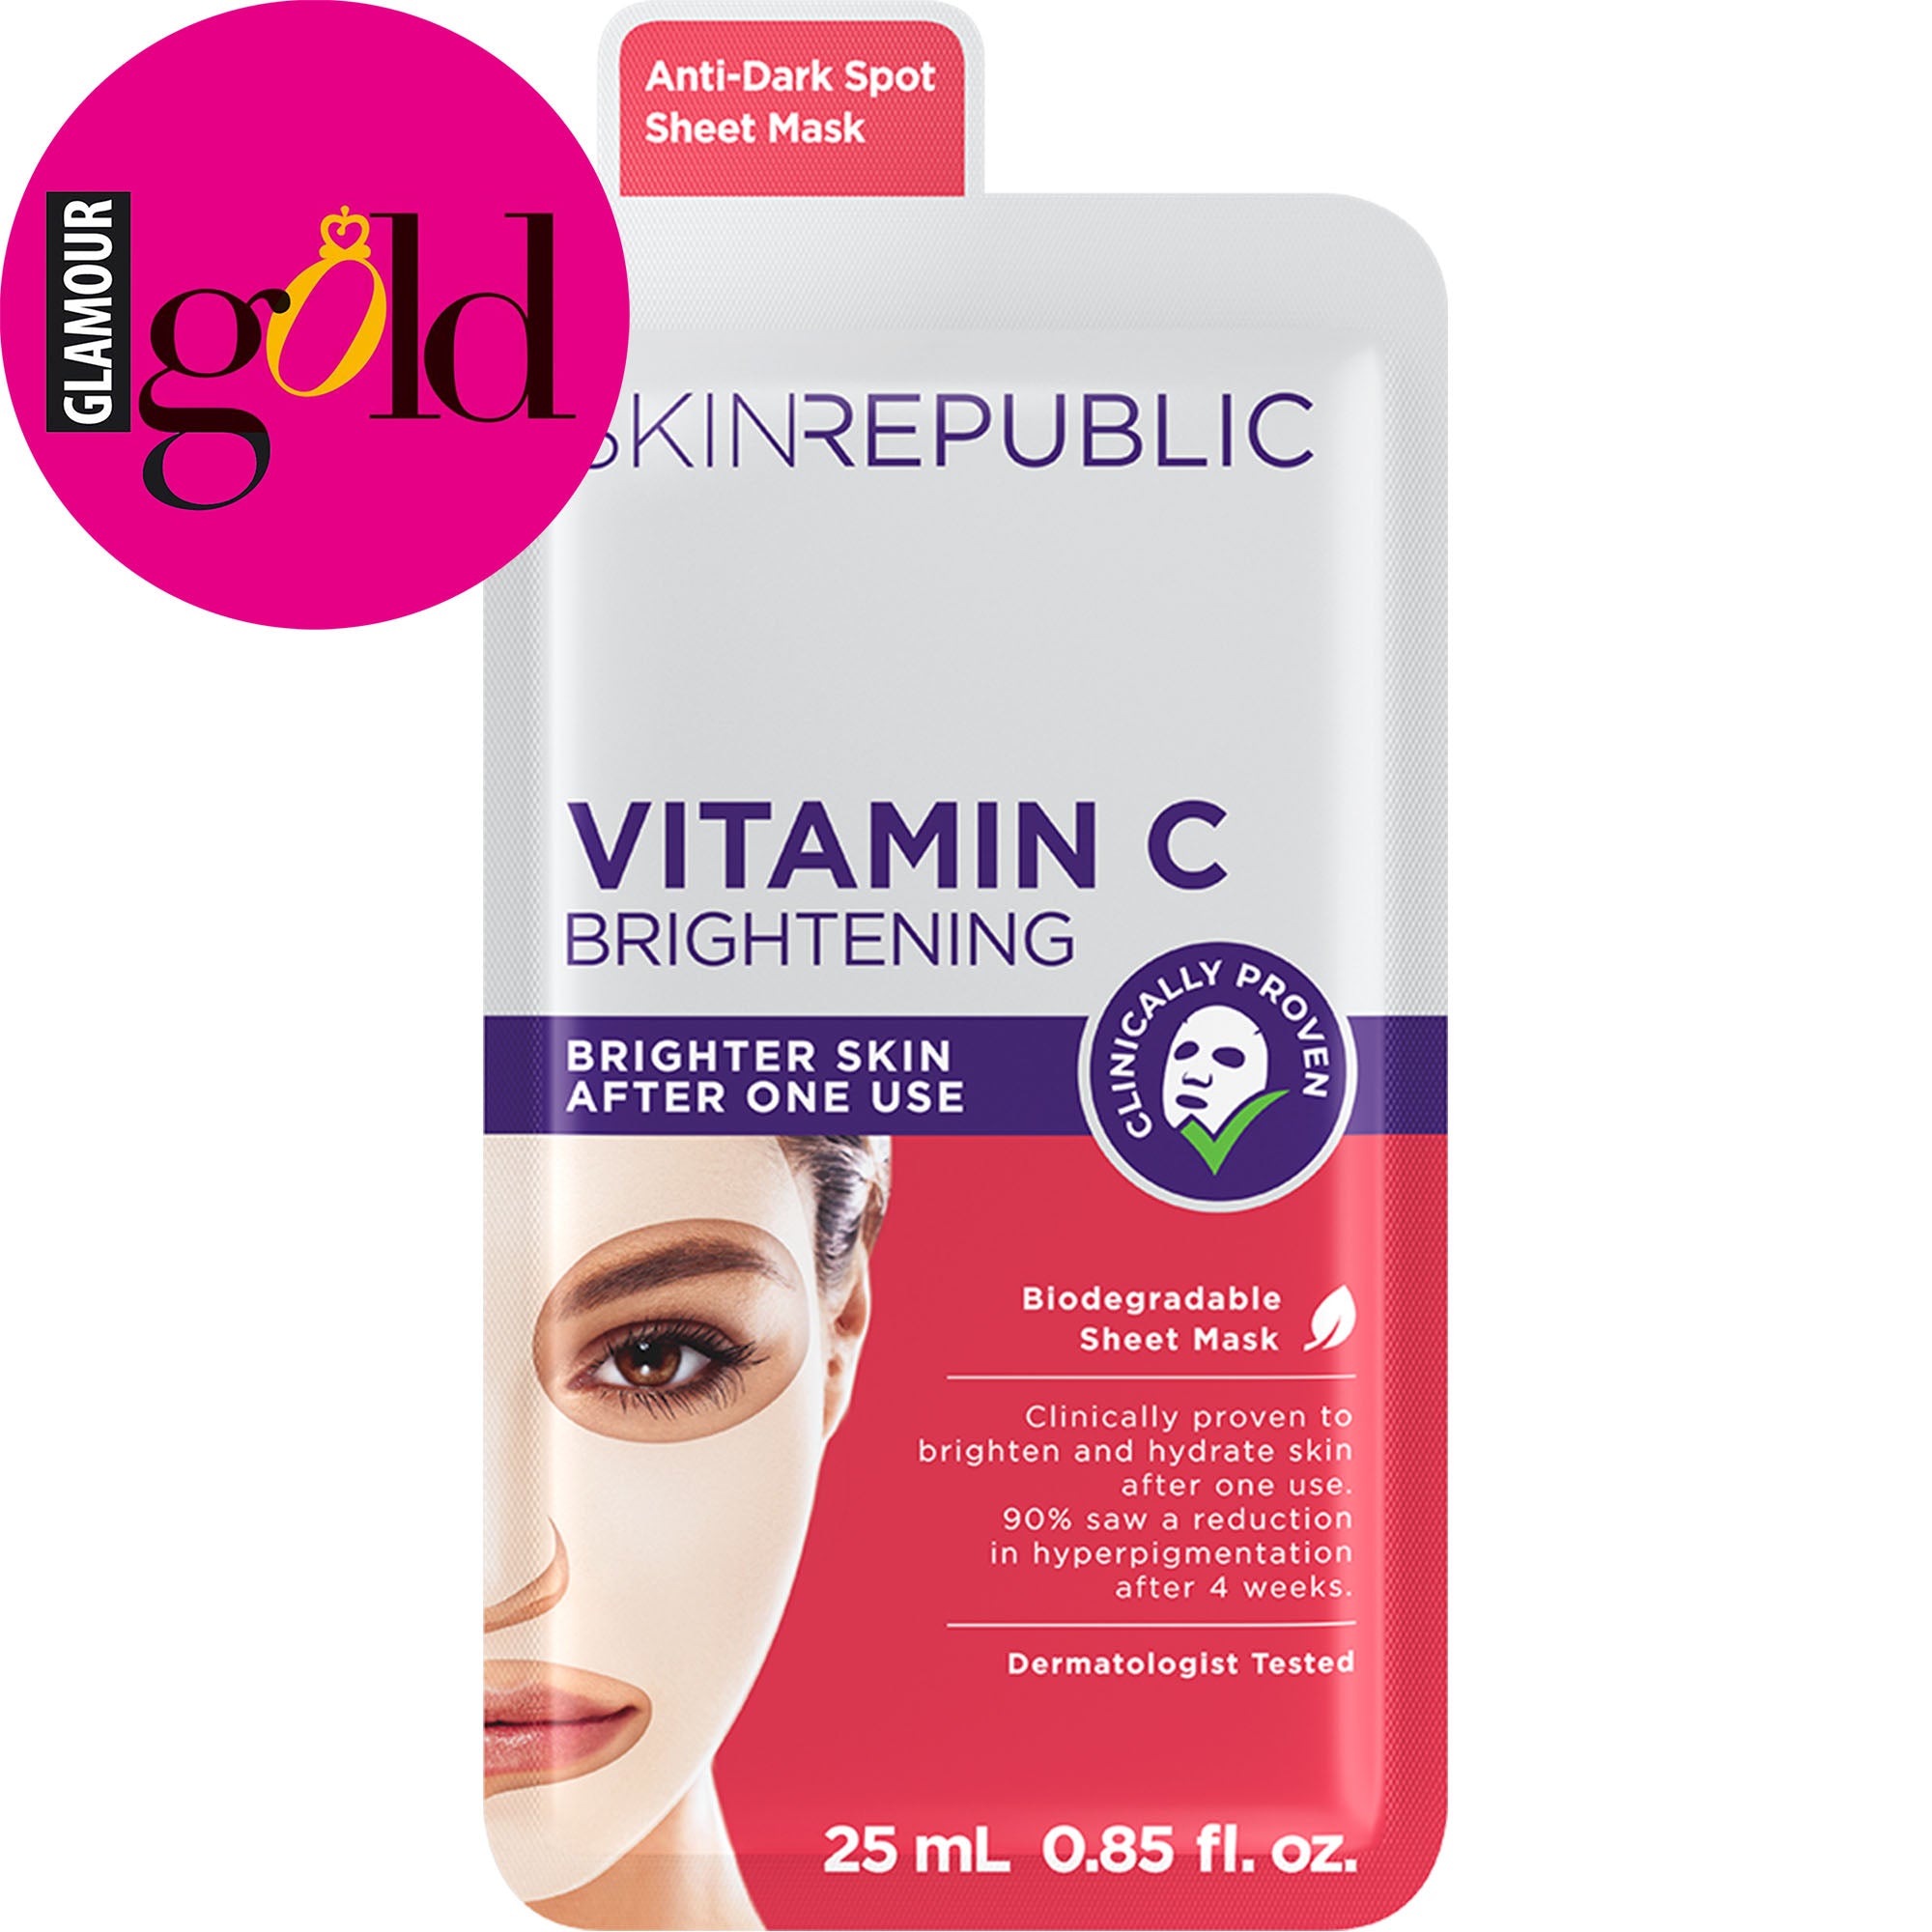 Vitamin C Brightening Face Mask Sheet